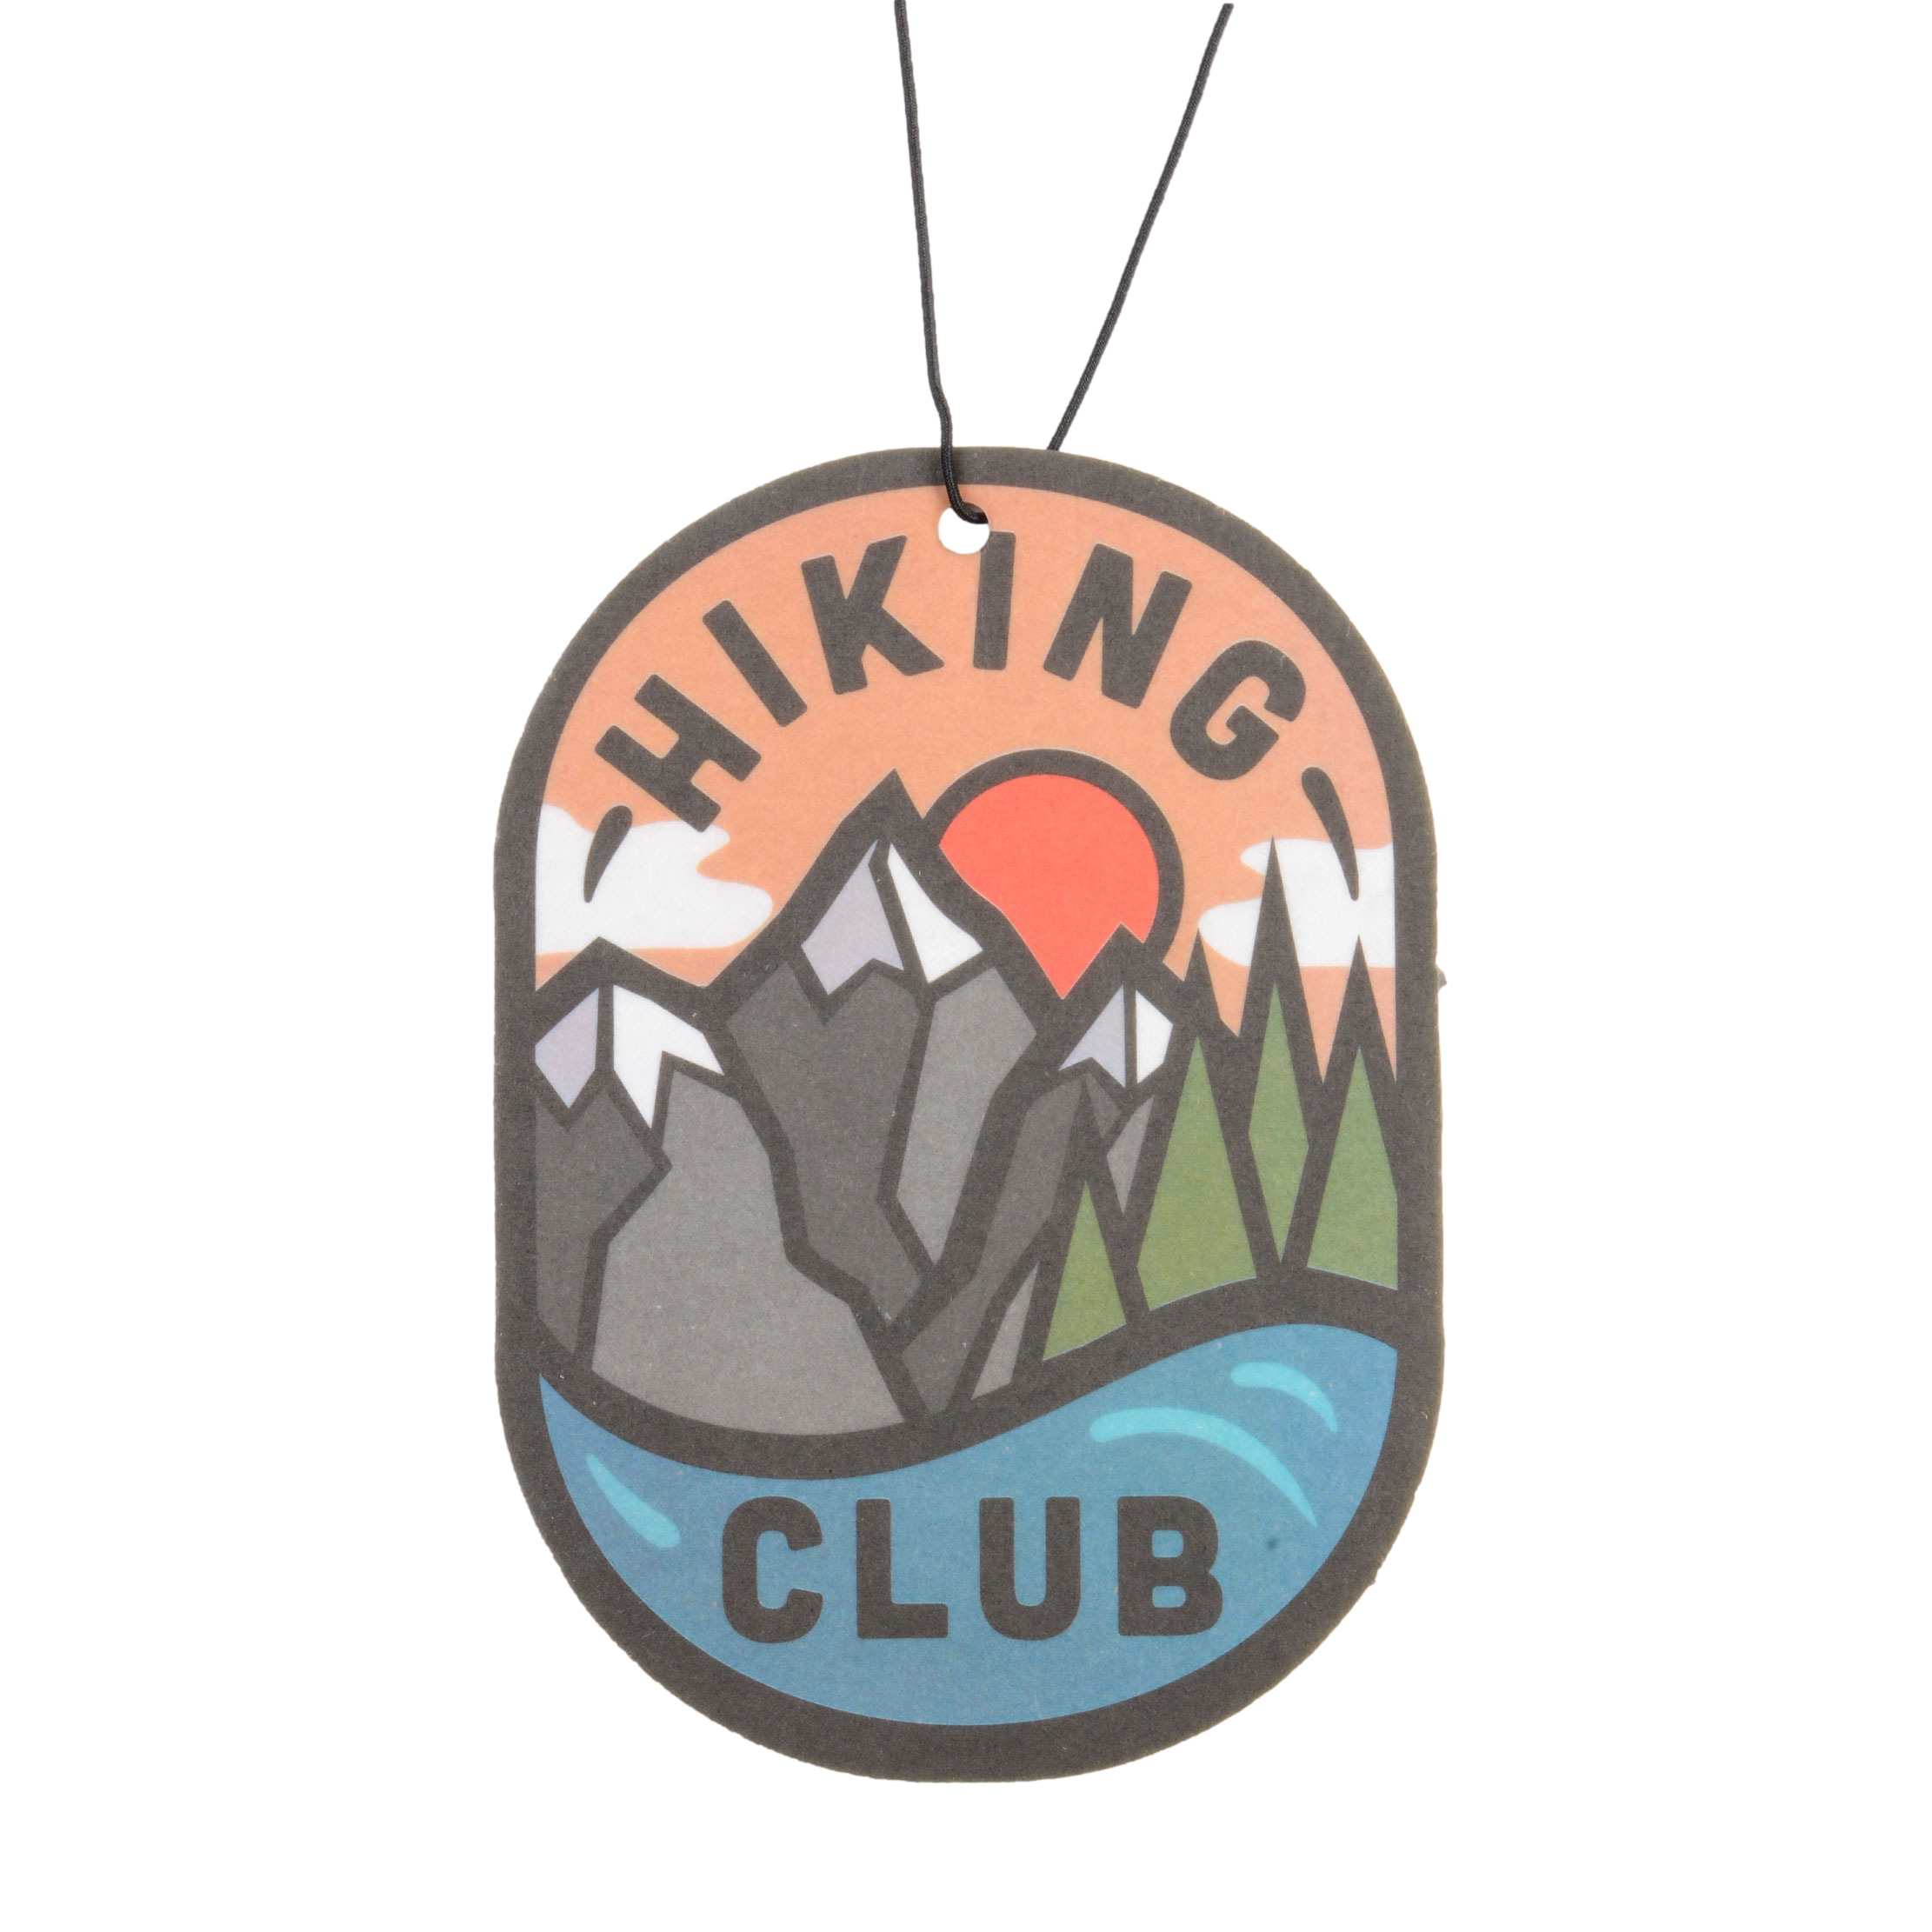 Hiking Club